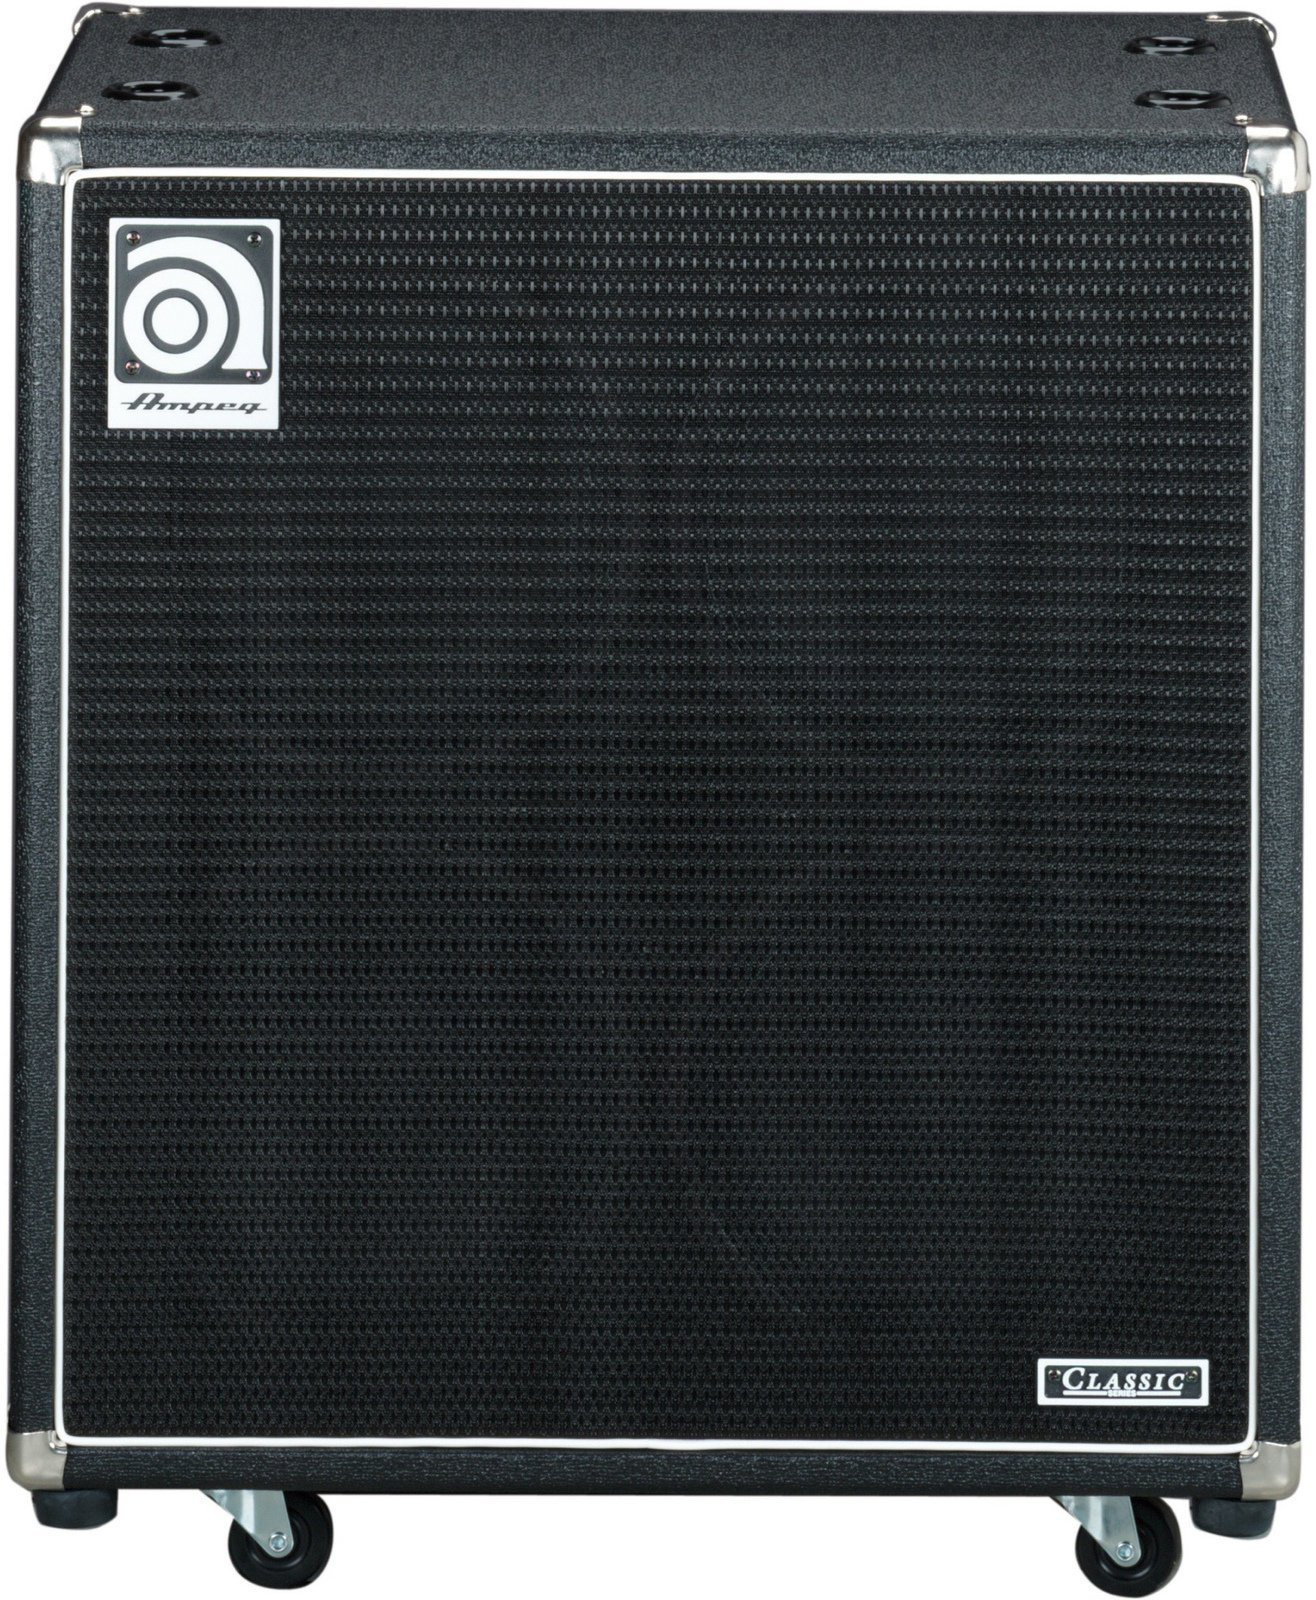 Bass Cabinet Ampeg SVT-410 HE